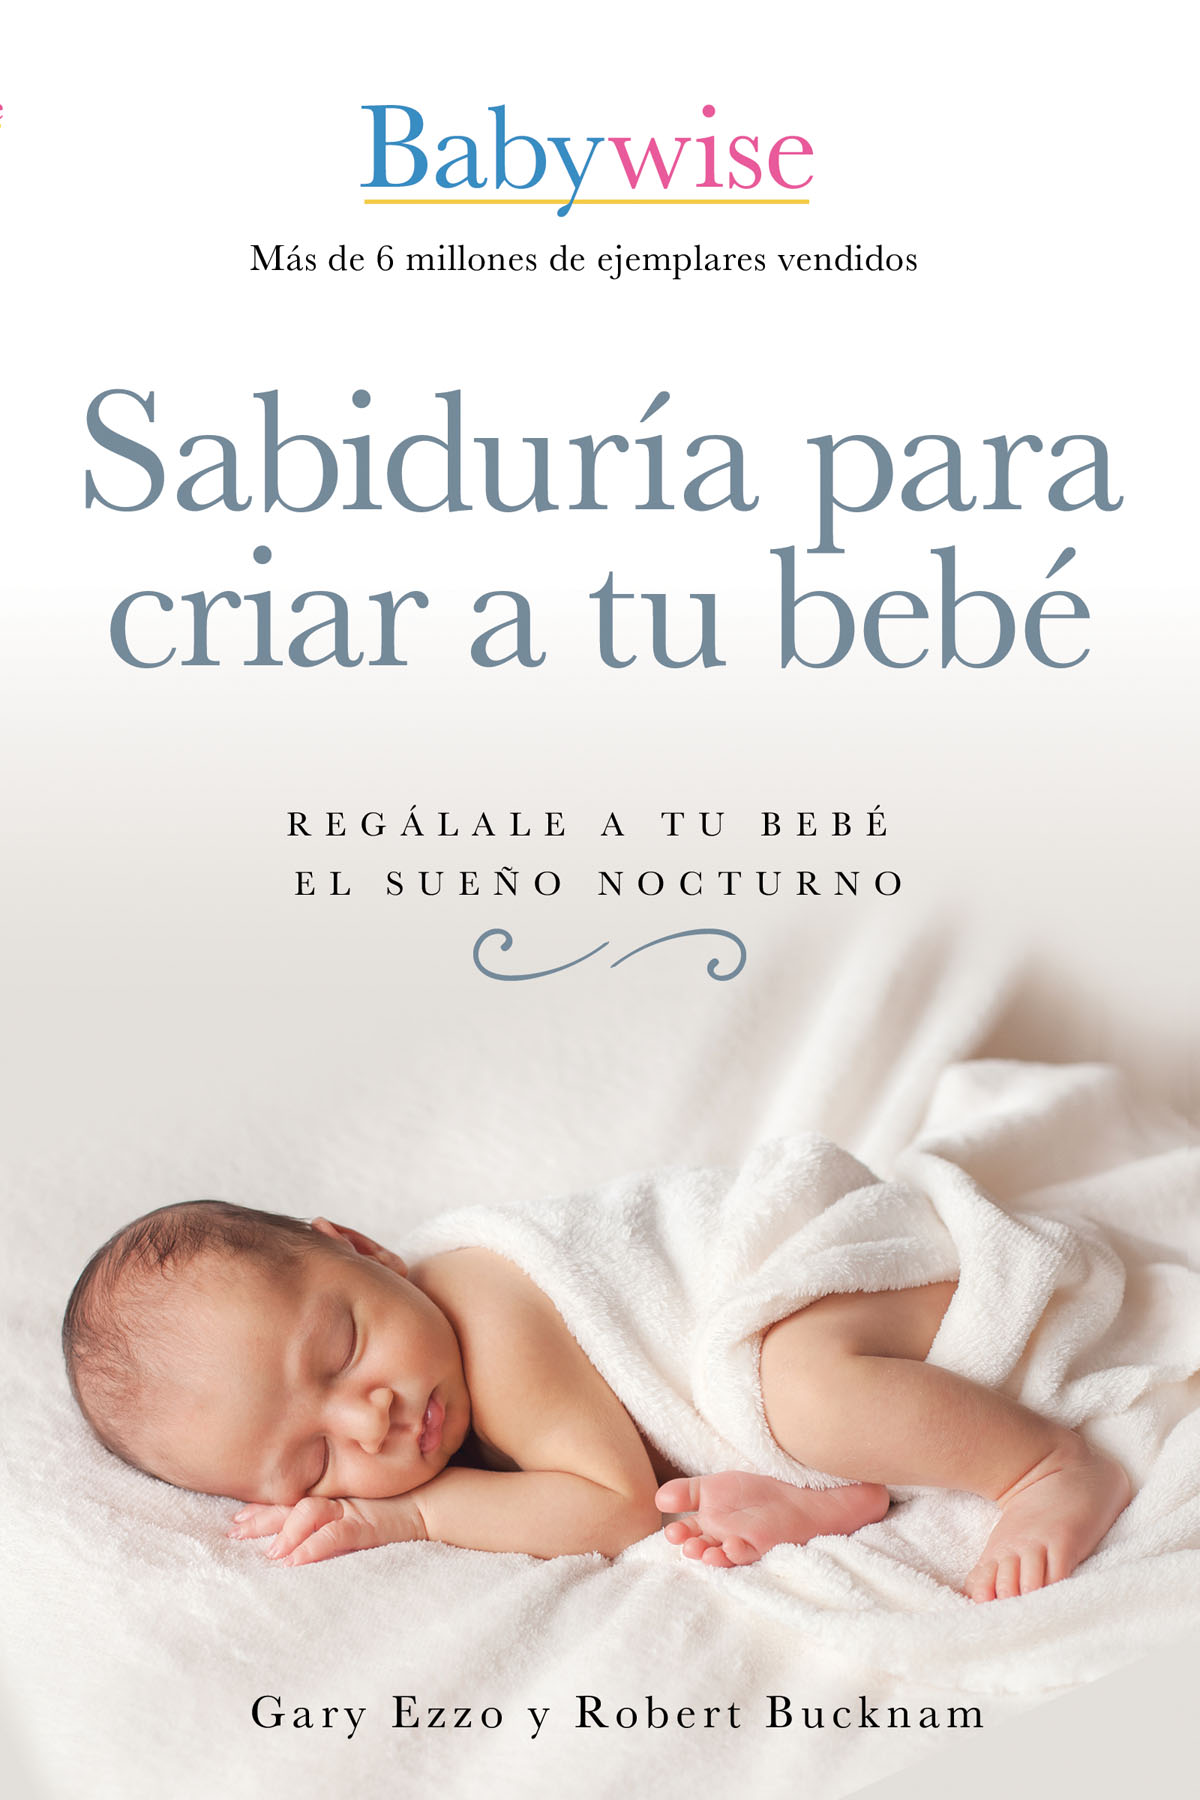 Opinión de profesionales de la salud sobre Sabiduría para criar a tu bebé Mi - photo 1